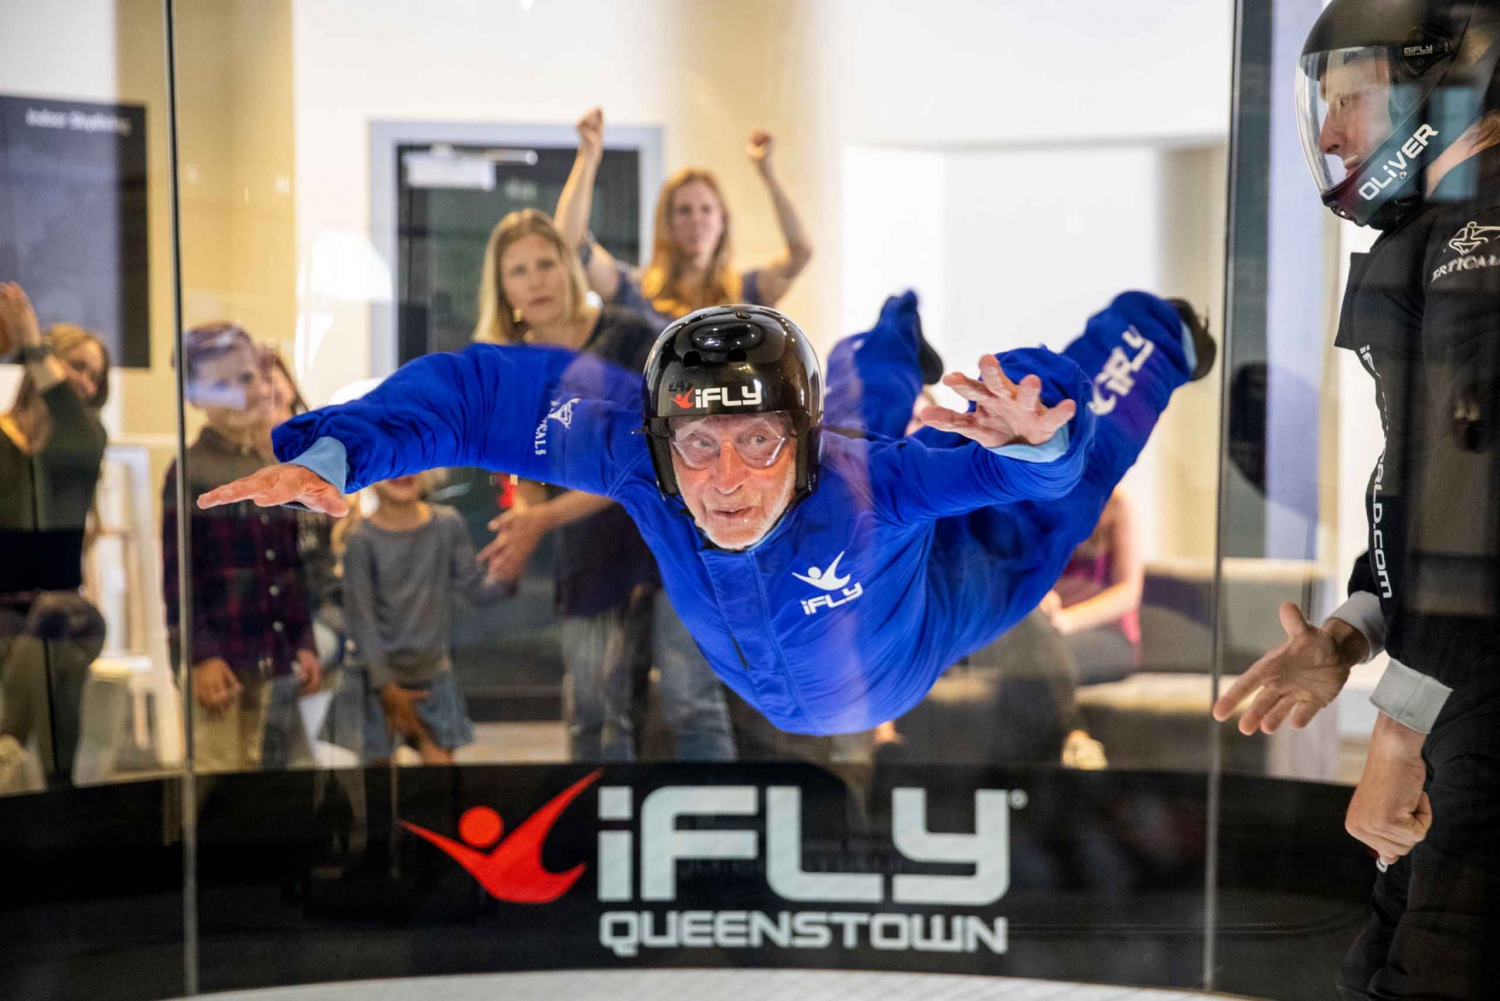 Queenstown: Ticket for 4 Indoor Skydiving Flights